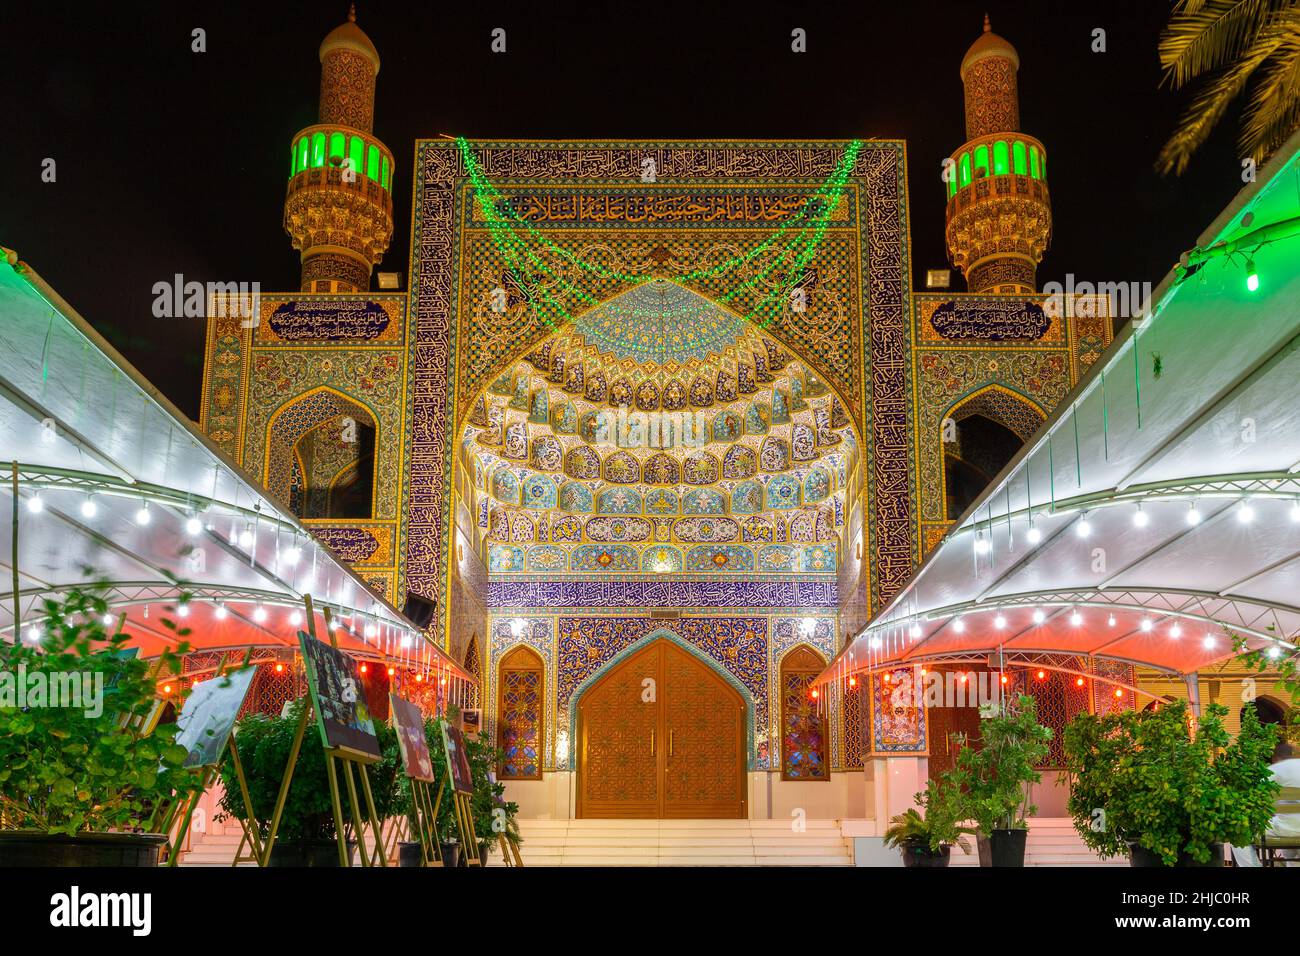 Dubai, VAE, 24.09.21. Die iranische Moschee (Imam Hussein Moschee) Eingang in Dubai, mit bunten Fliesen, persischen Stil Fassade und UAE National Flagge Colo Stockfoto